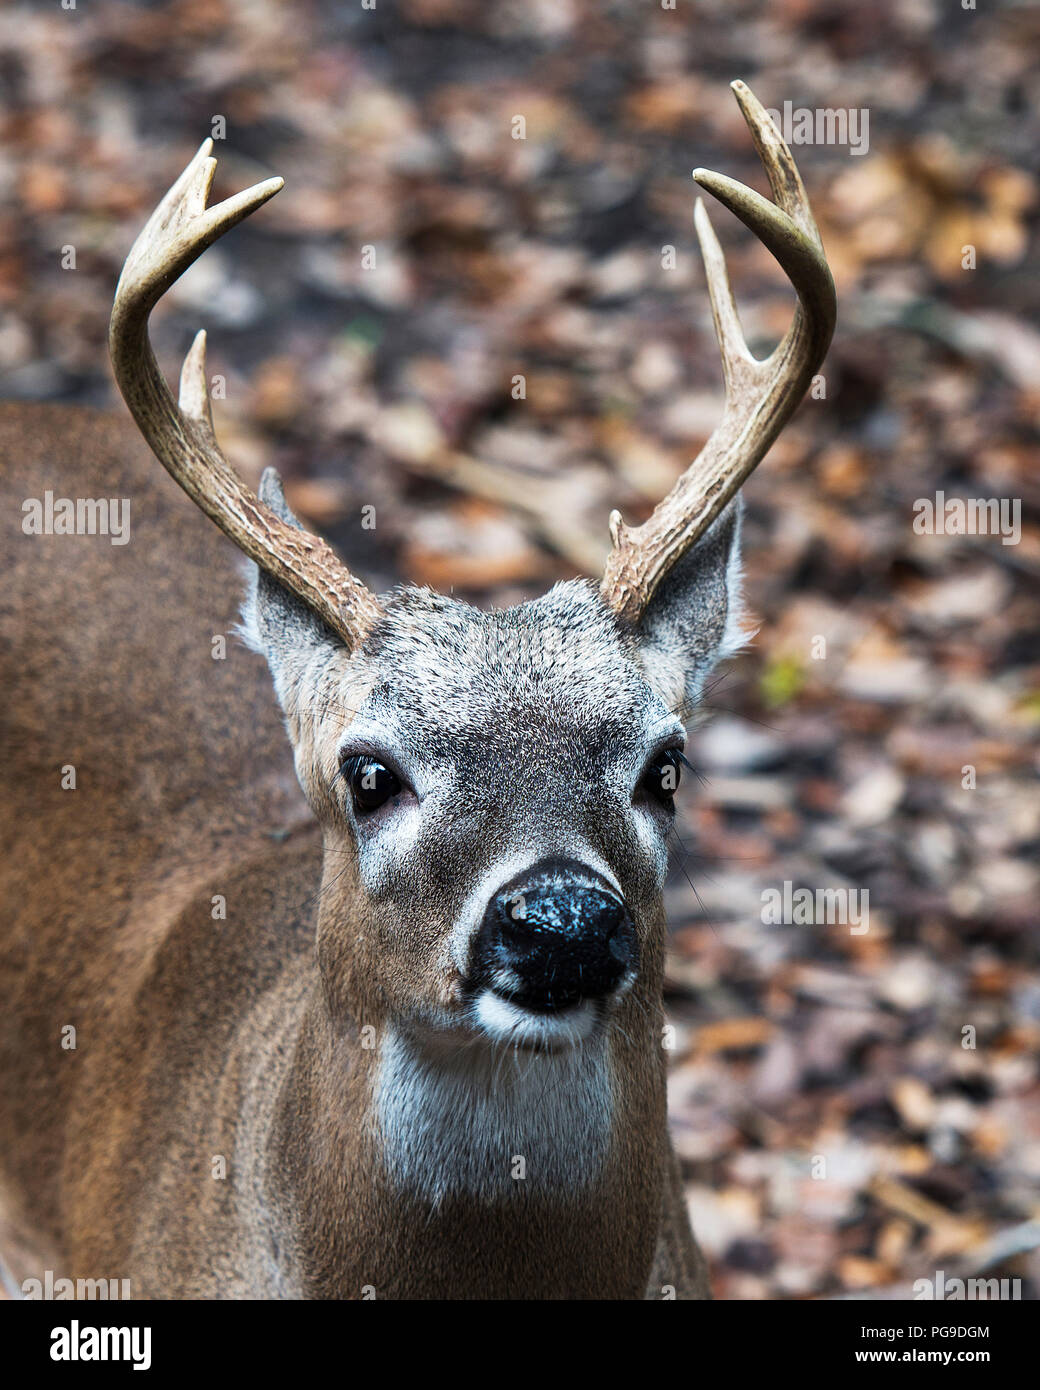 Rotwild Florida Key Deer Tier close-up Head View, Geweihe, Ohren, Augen, Nase, in seiner Umwelt und Umgebung, mit einem Bokeh Hintergrund. Bild Foto. Stockfoto